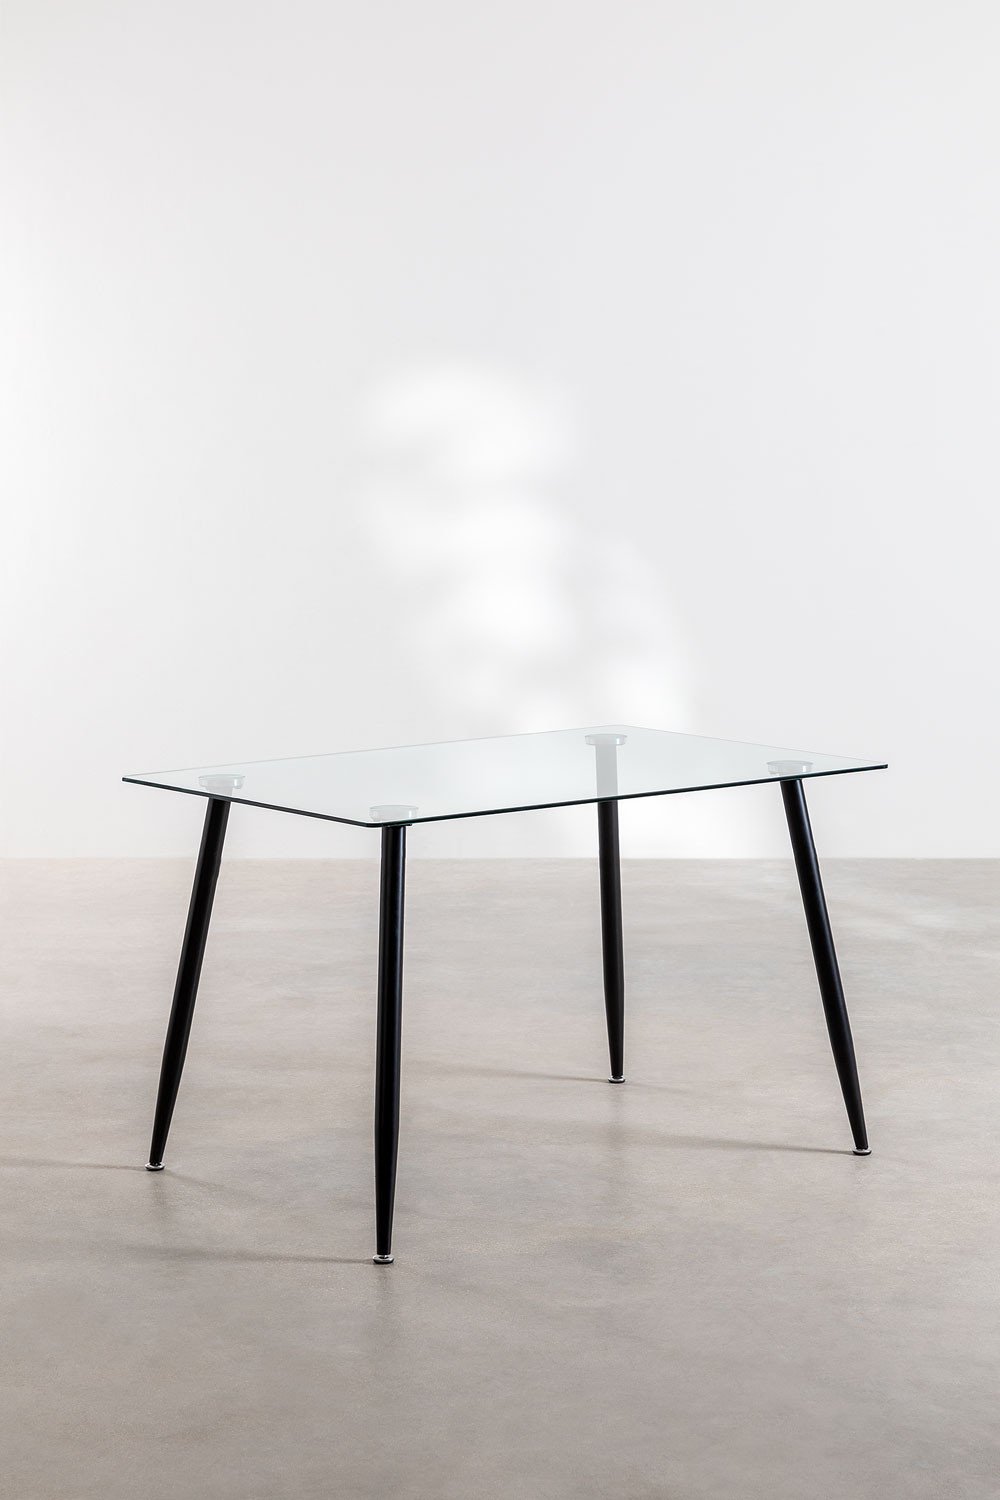 Tavolo da pranzo rettangolare in acciaio e vetro (120x80 cm) Lahs Style, immagine della galleria 1